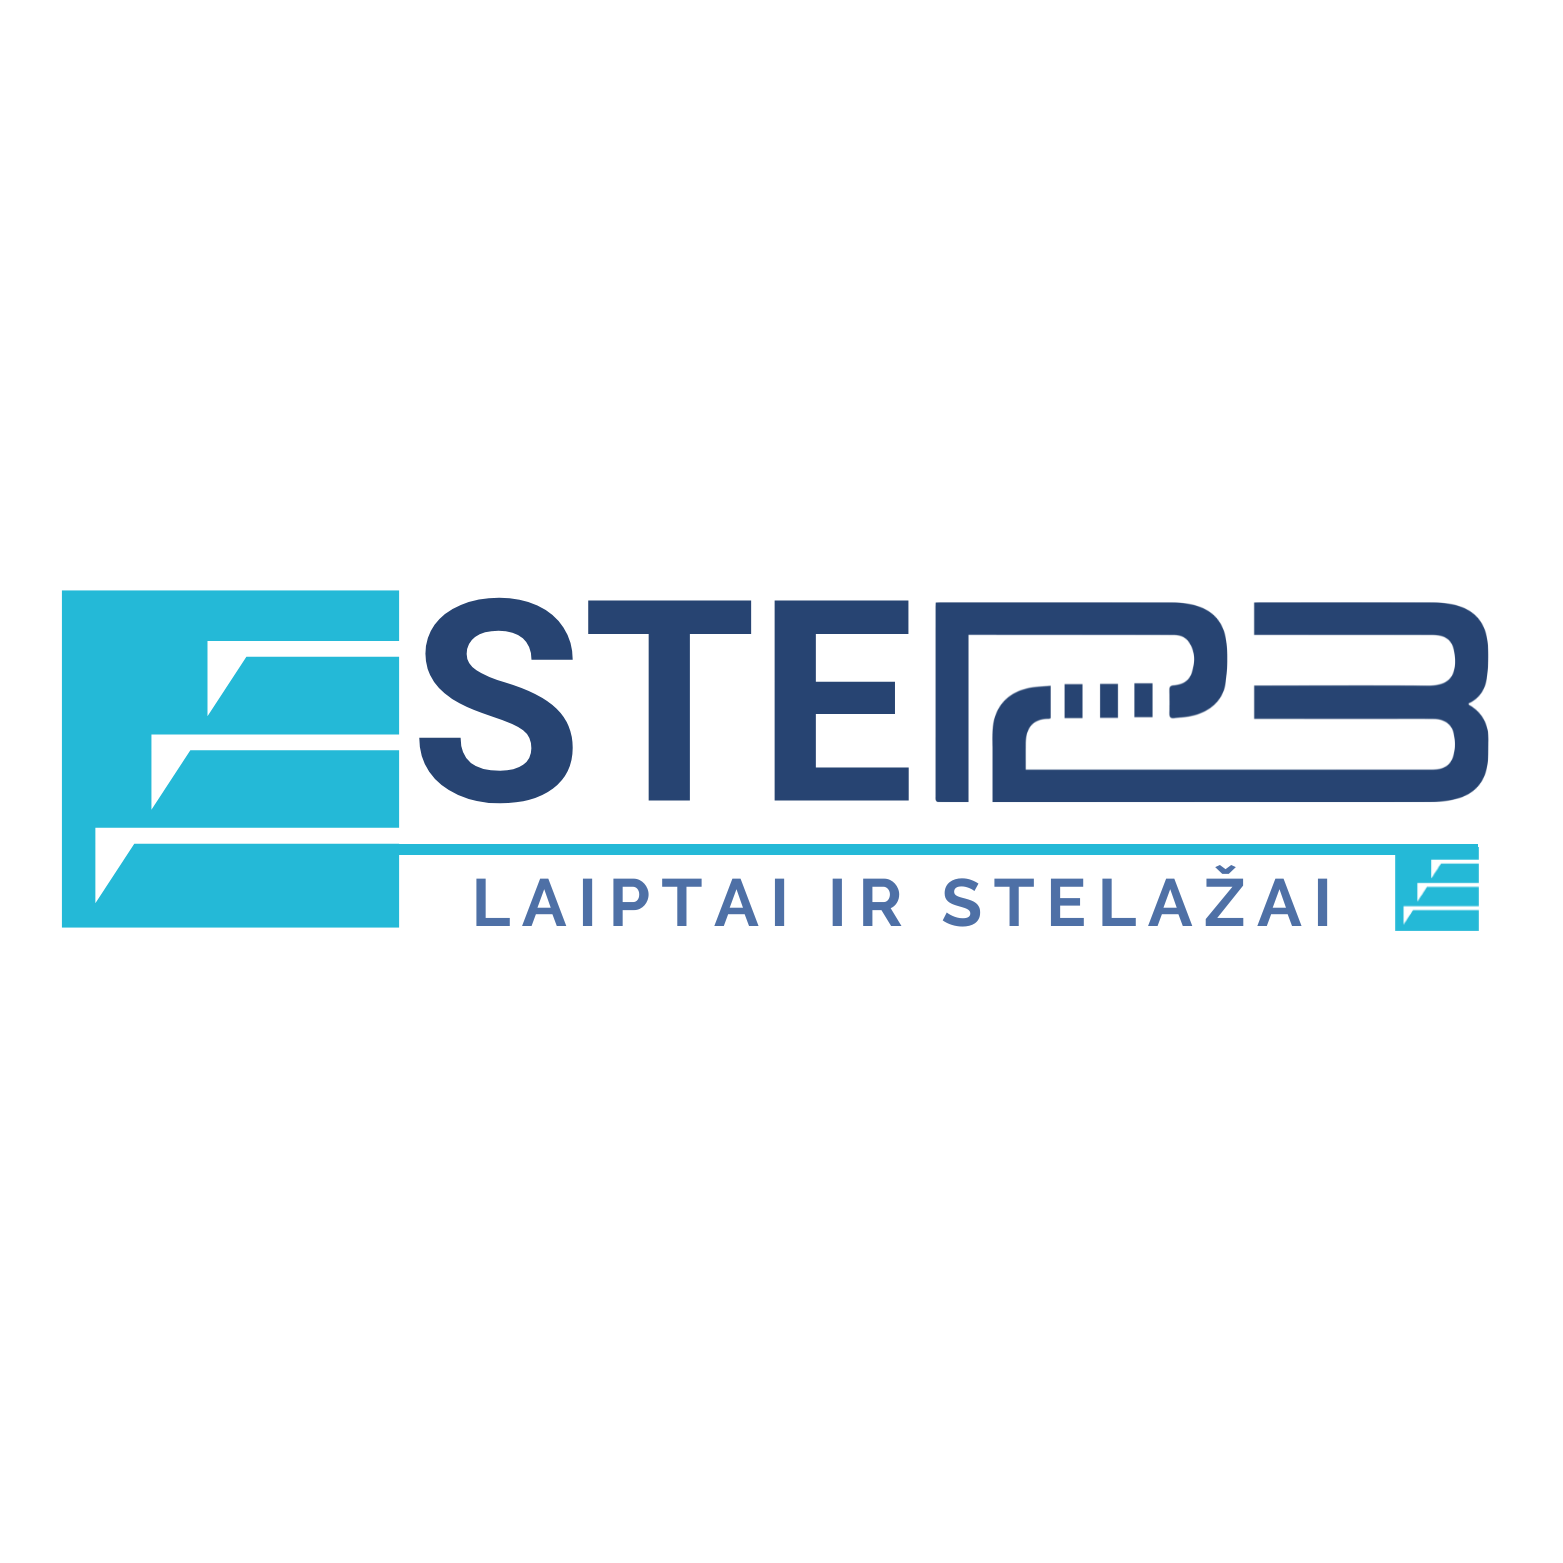 STEP123.eu